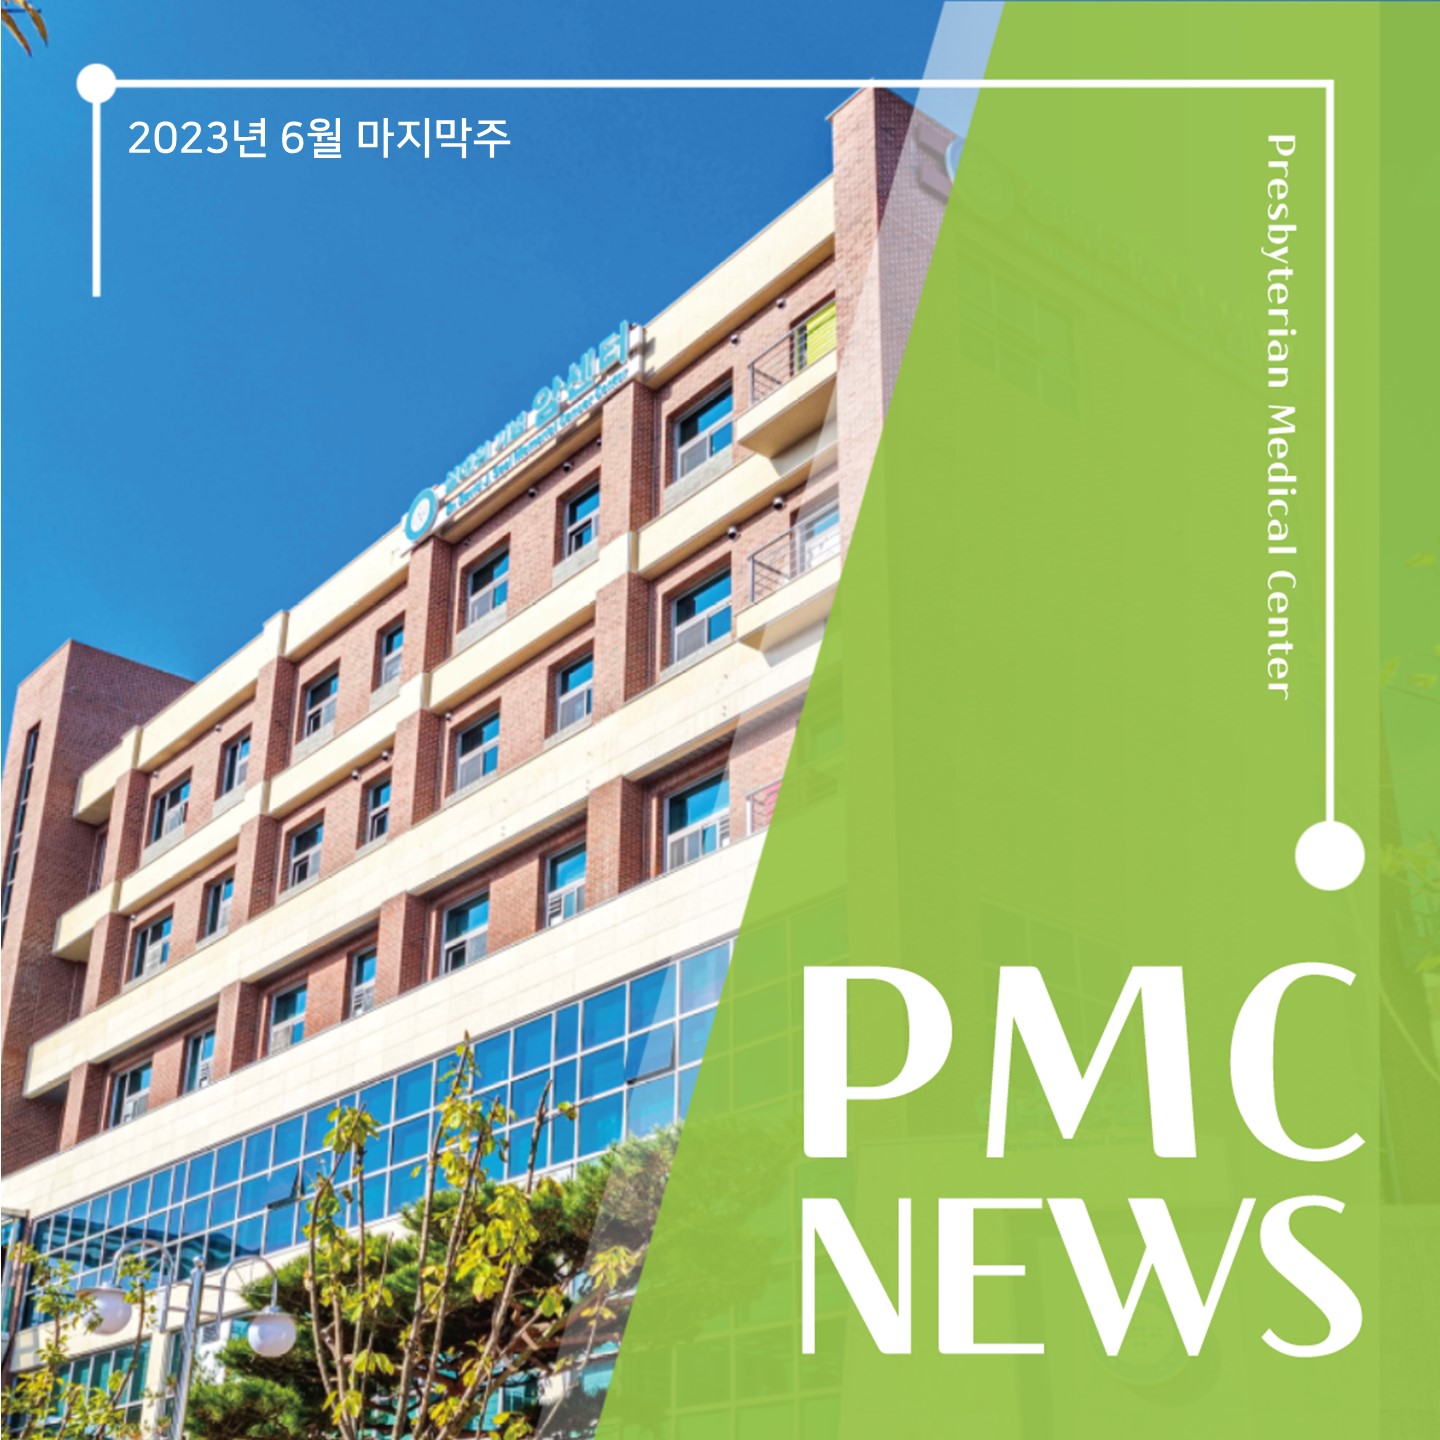 2023년 6월 마지막주
Presbyterian Medical Center
PMC
NEWS
